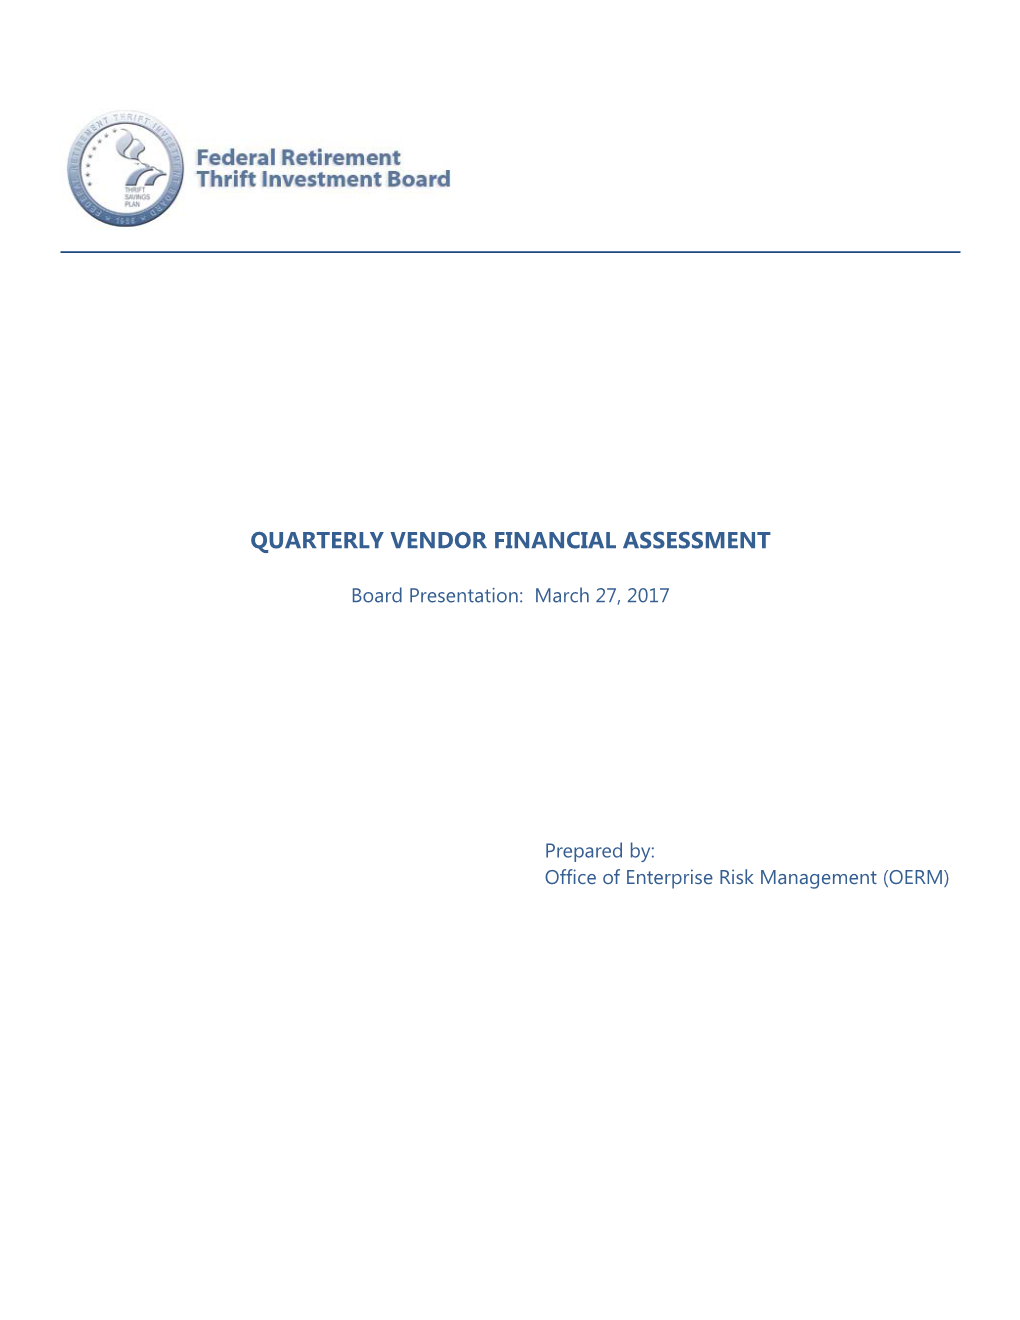 Quarterly Vendor Financial Assessment